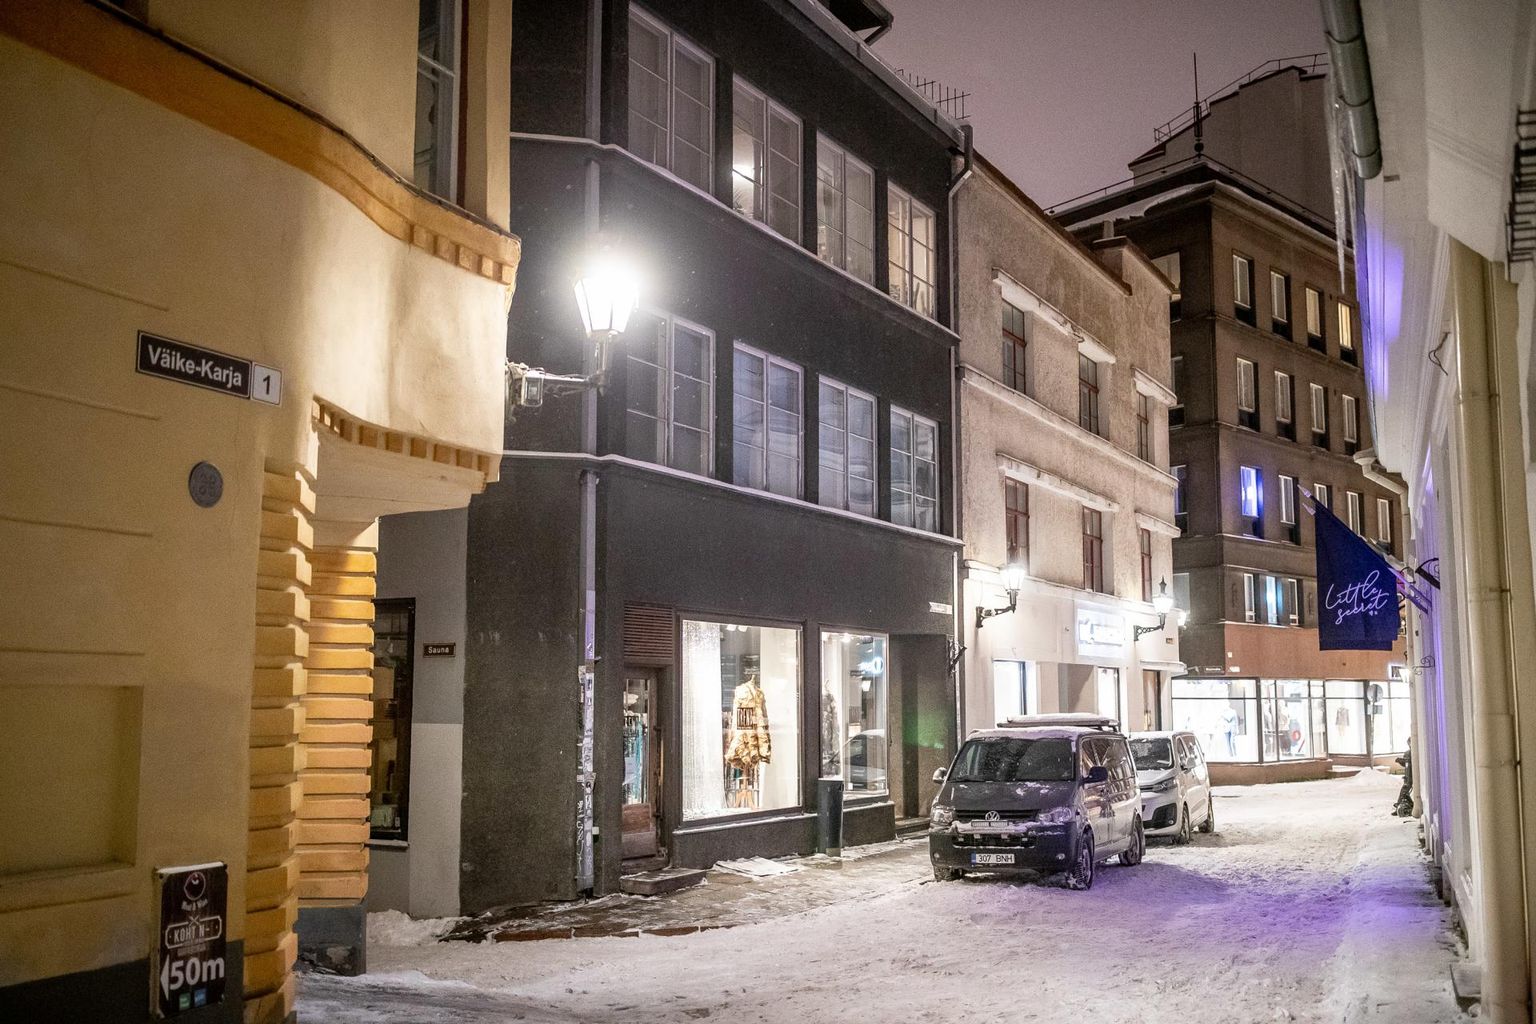 Ханна-Мария Селл (23), и ее партнер, финский бизнесмен Теэму Васанкари (52), которые были найдены мертвым с пулевыми ранениями в квартире в Старом городе Таллинна.